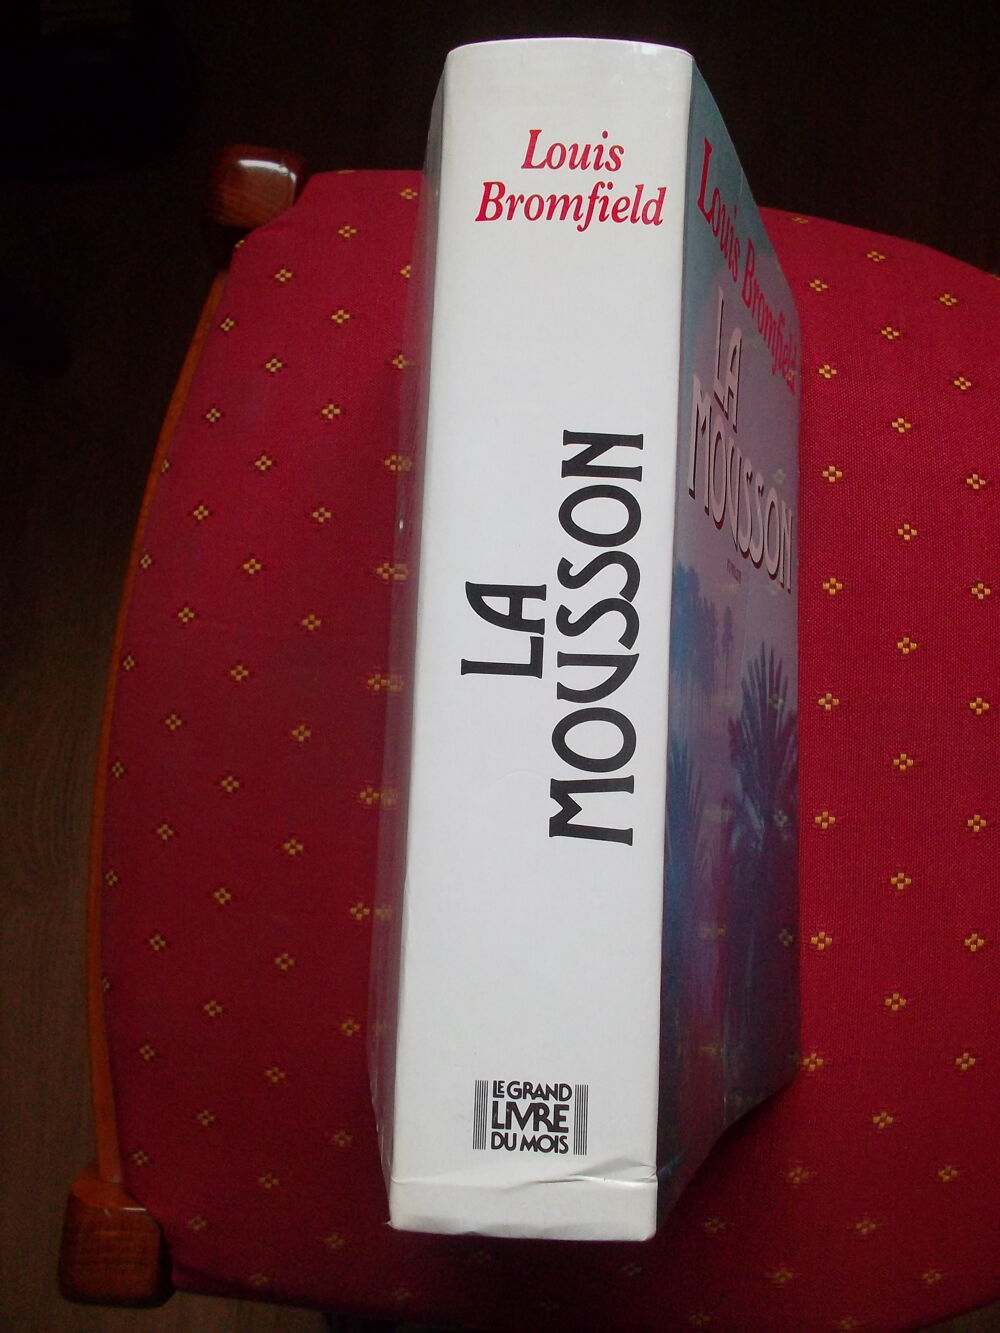 La mousson // roman Livres et BD